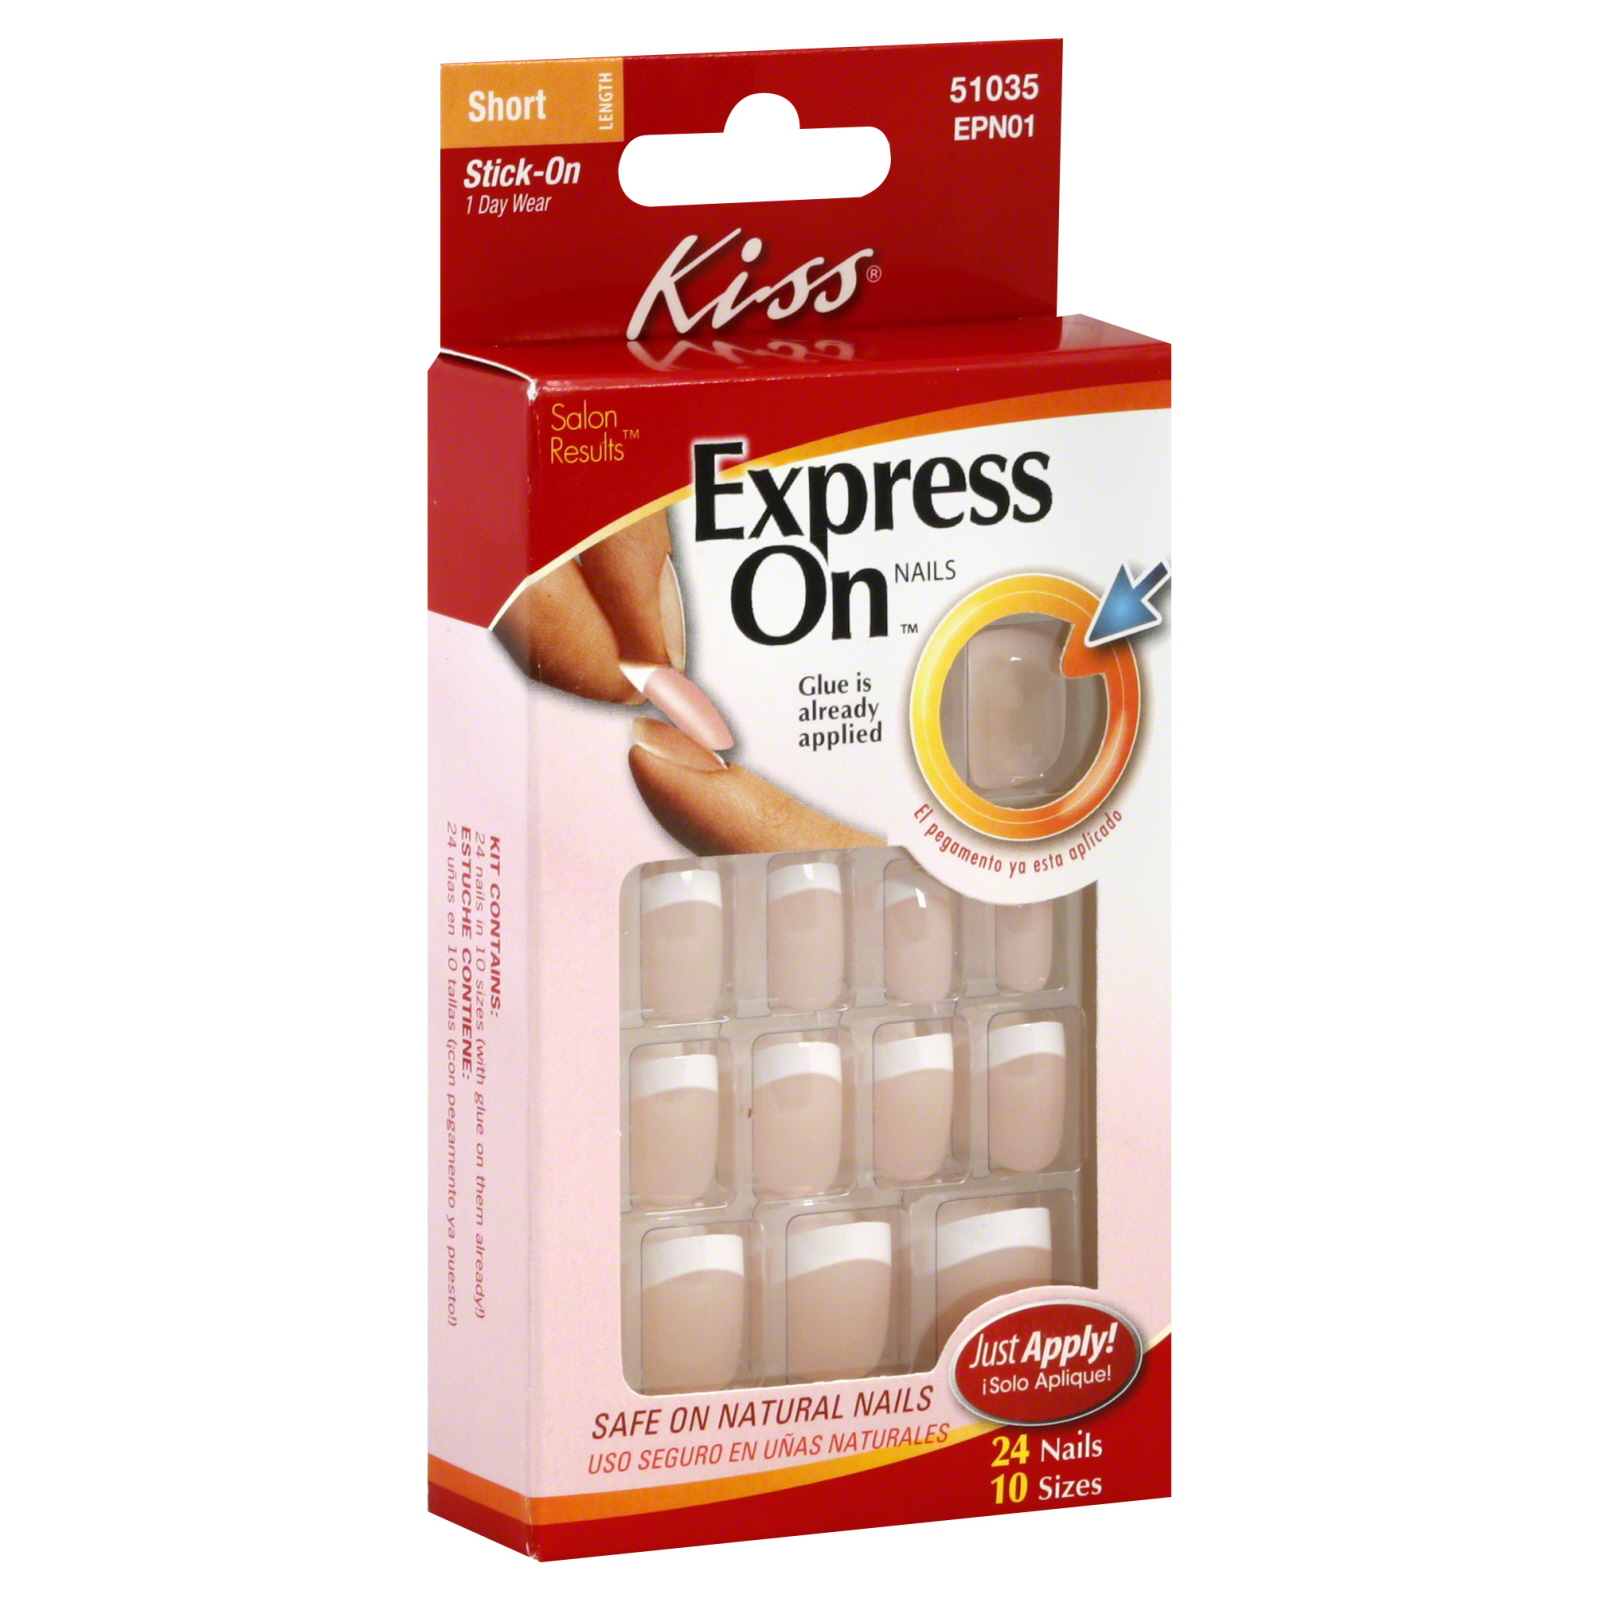 Kiss Express On Nails, Short Length, Lady, 24 nails